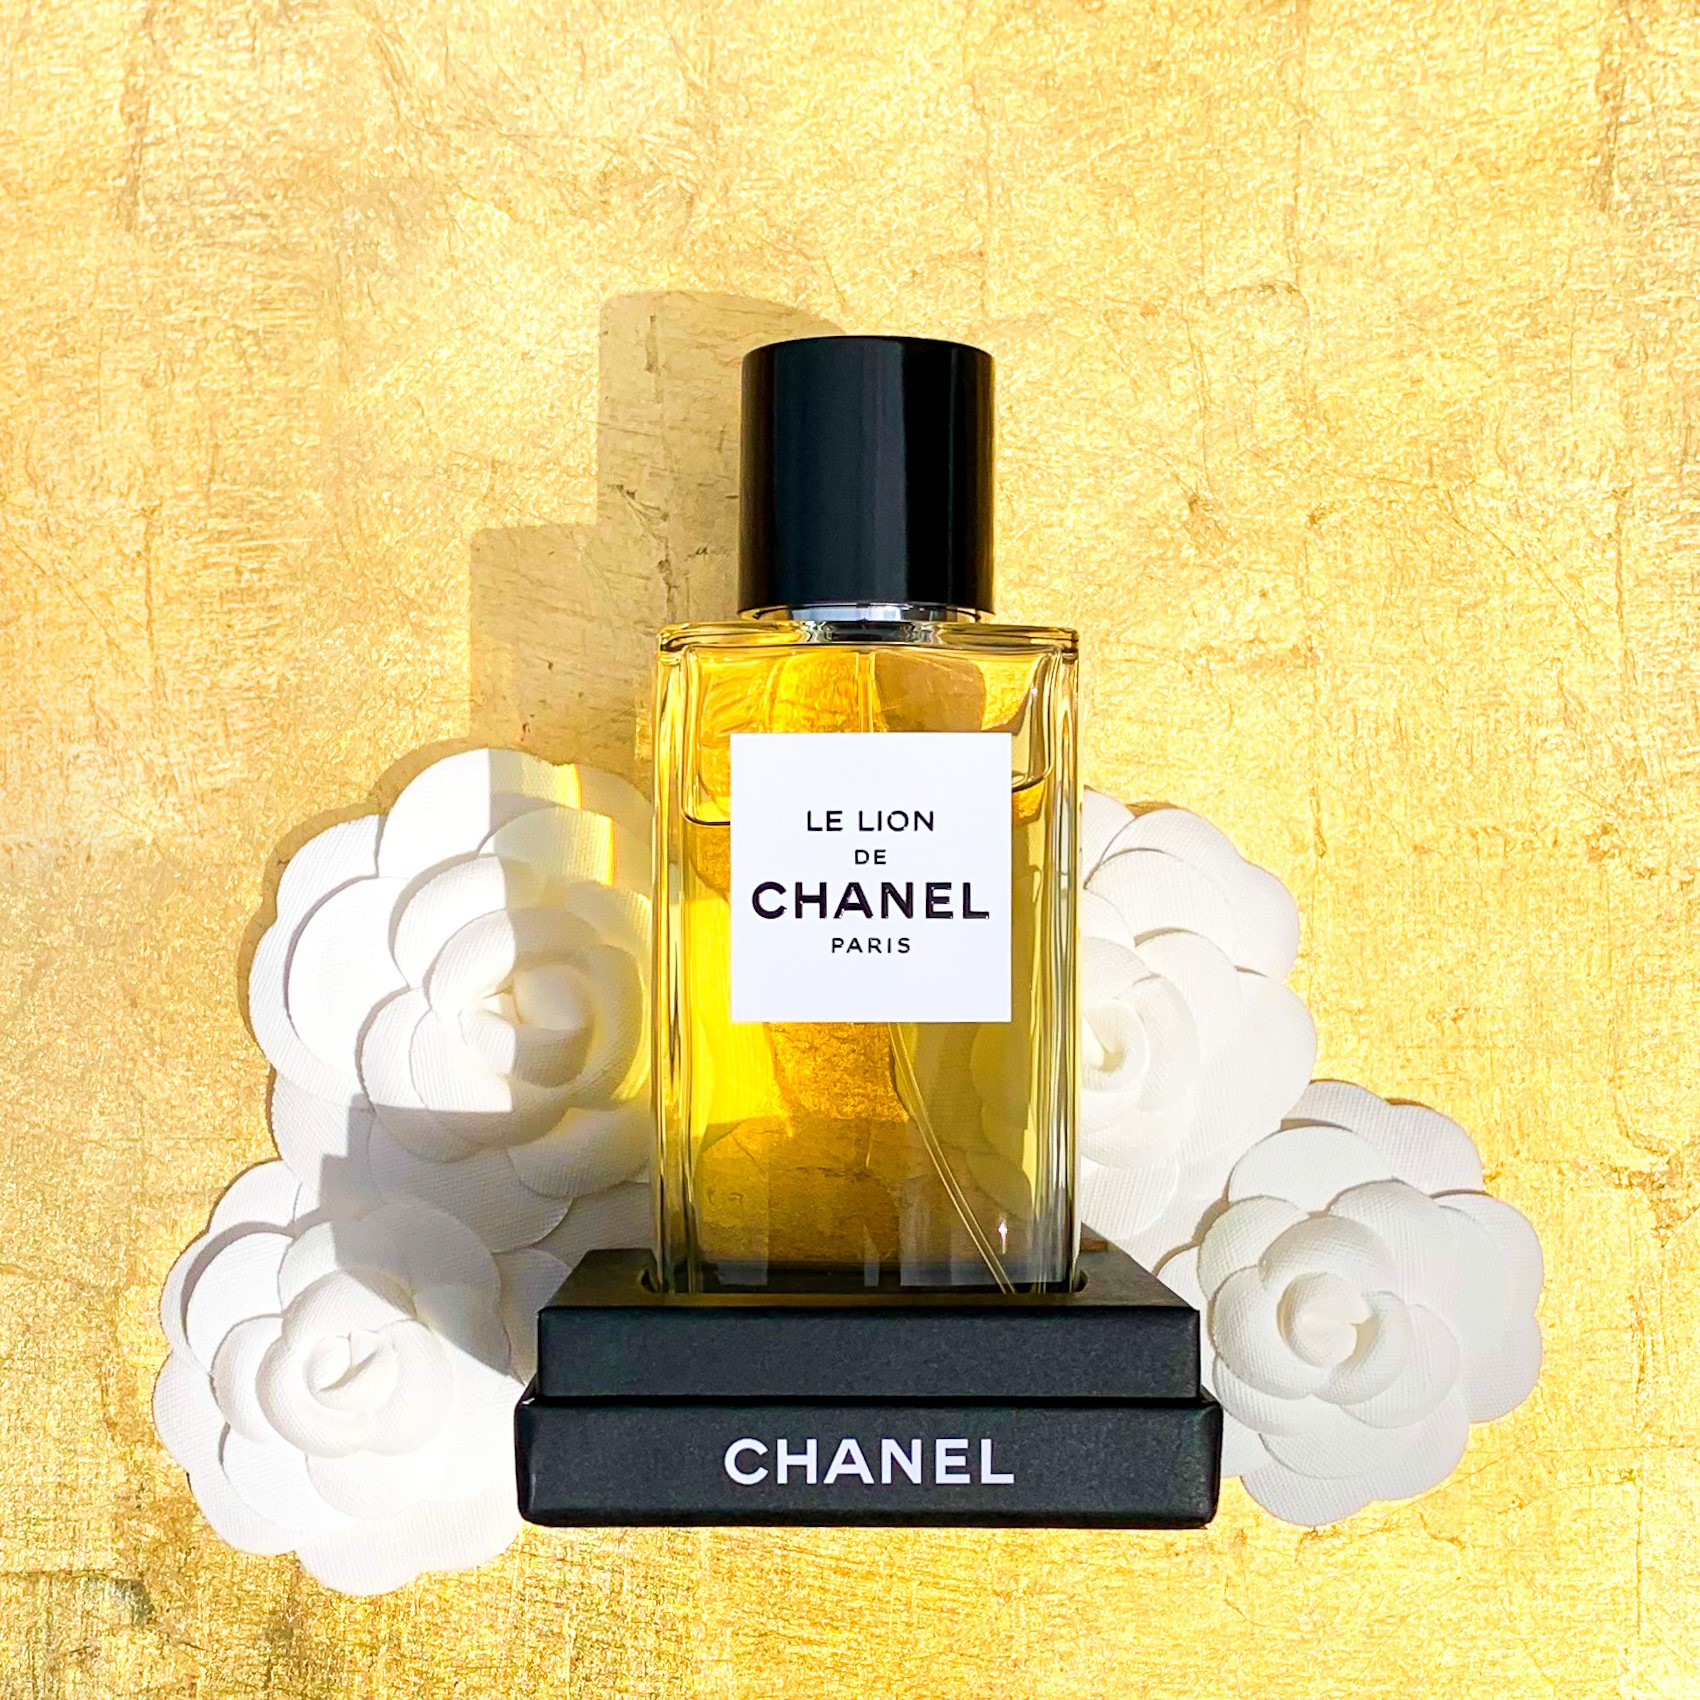 ホワイト系【本物保証】【CHANEL】LE LION DE CHANEL 75ml 香水(女性用 